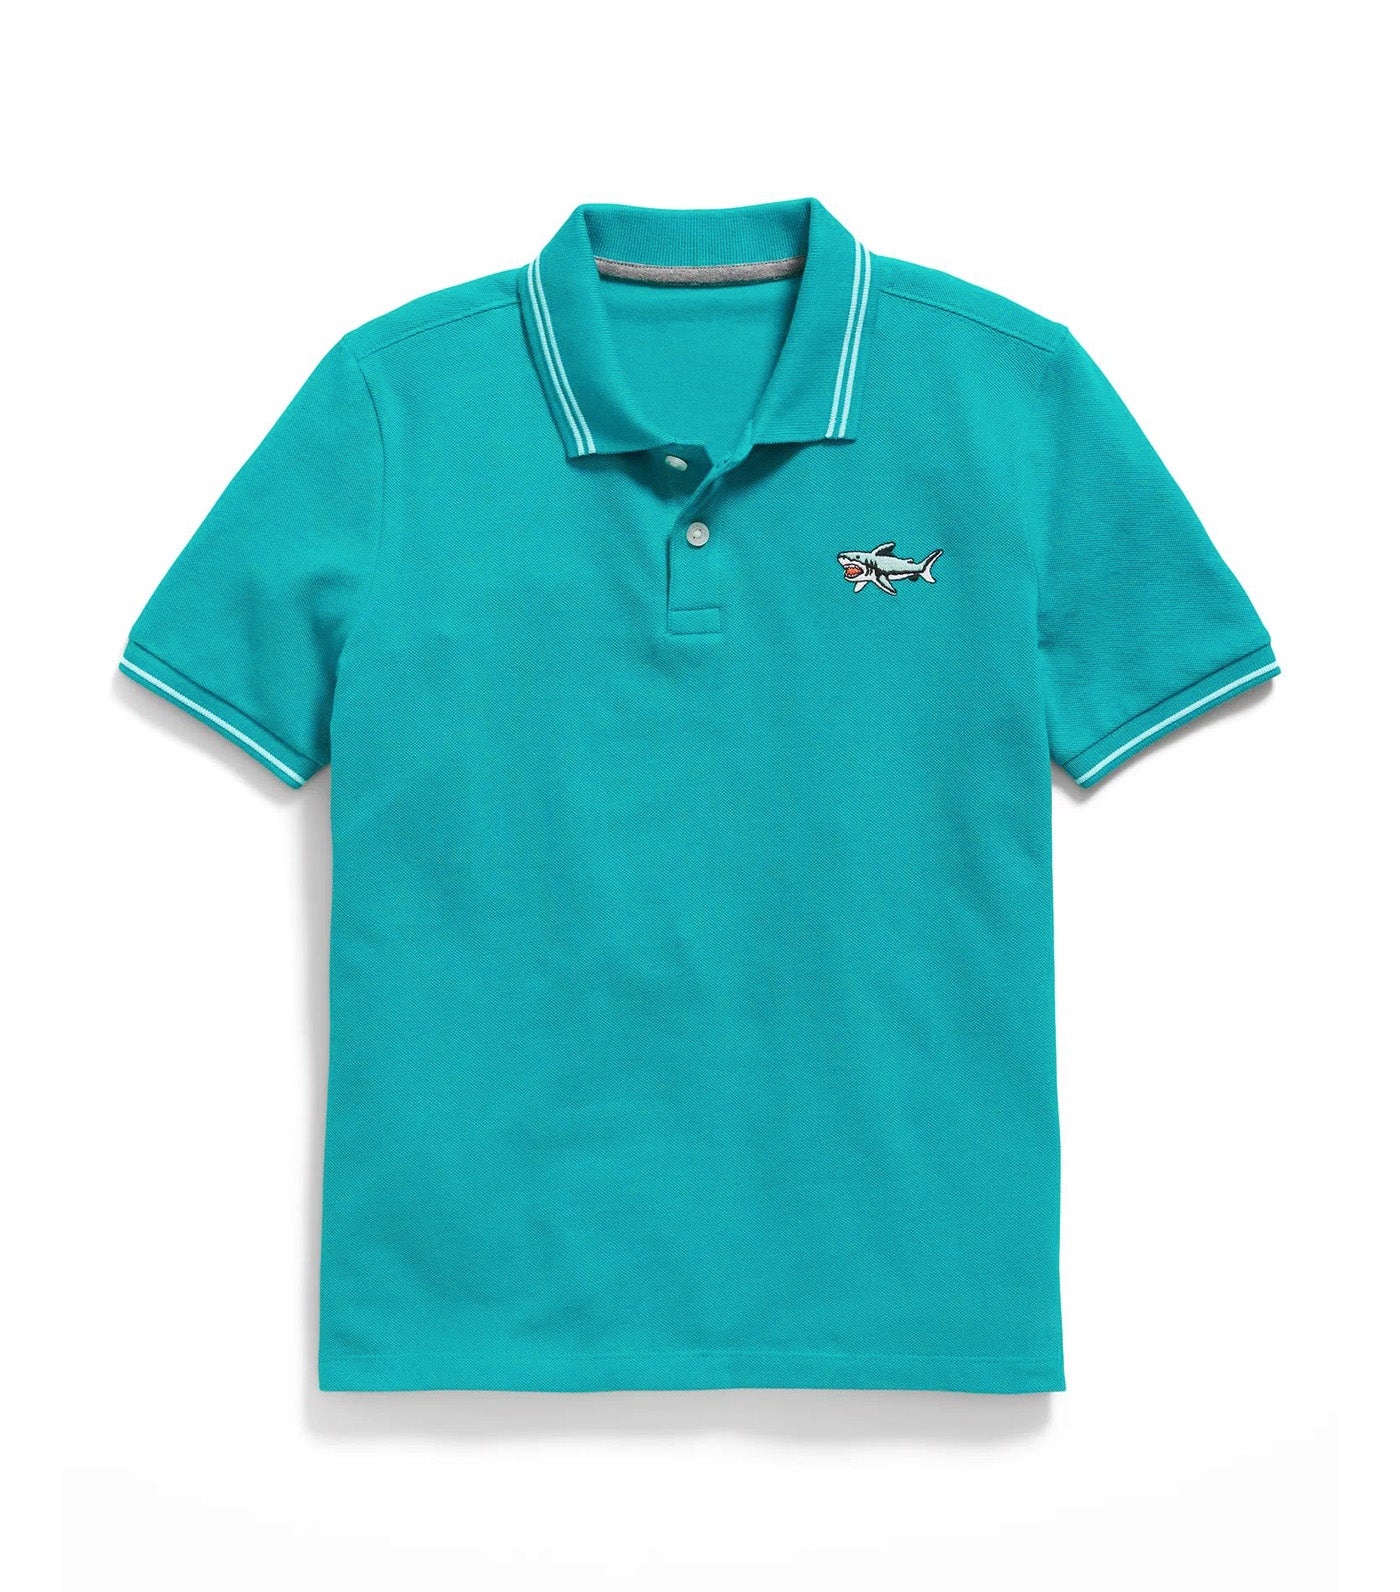 School Uniform Pique Polo Shirt for Boys - Fermented Jade